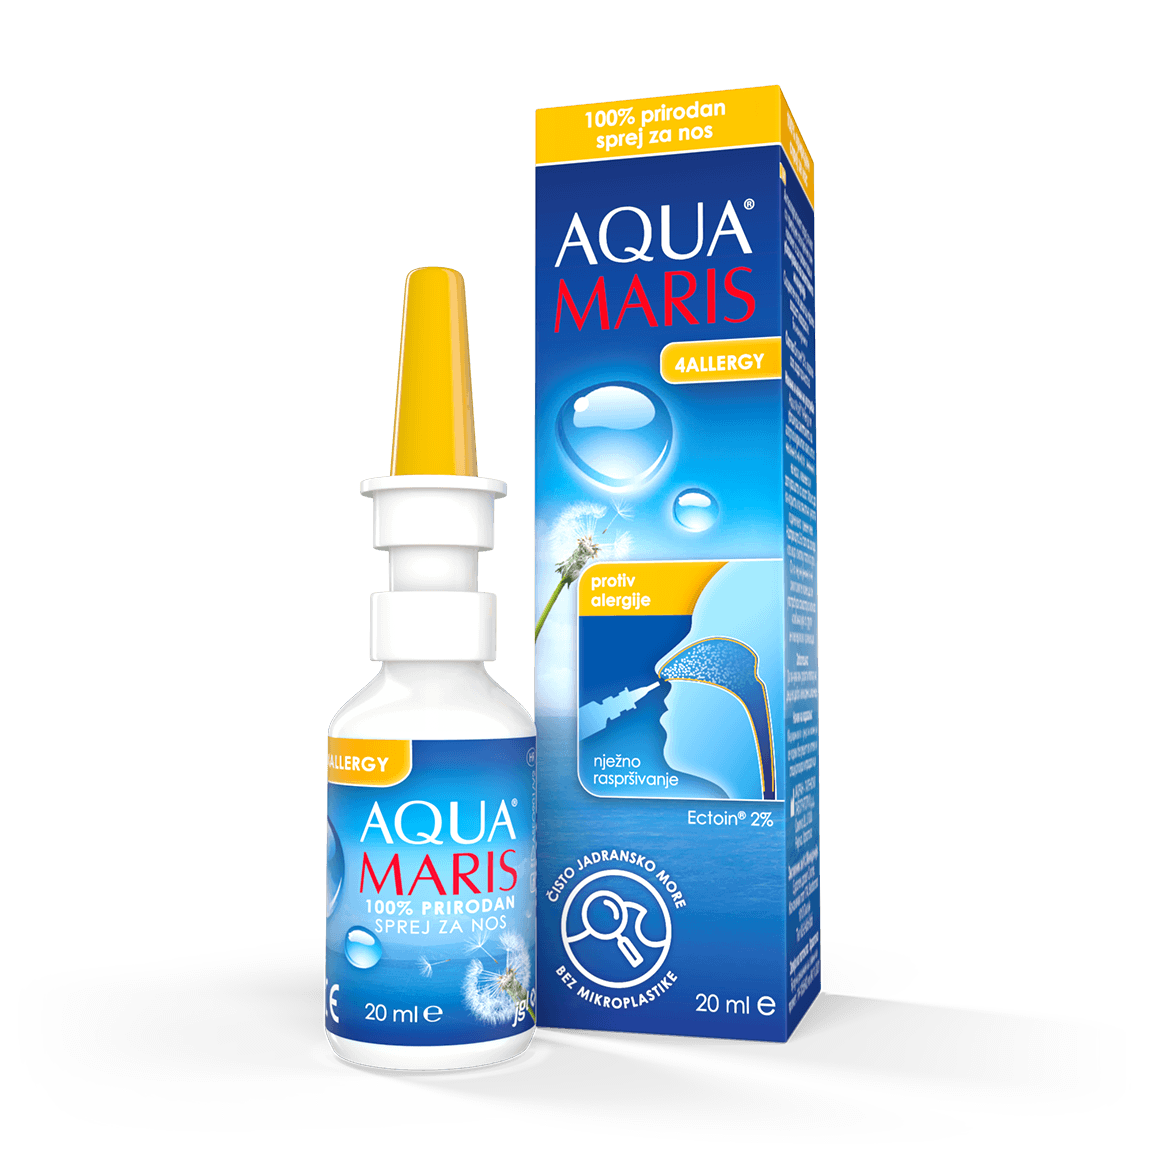 Aqua Maris 4Allergy